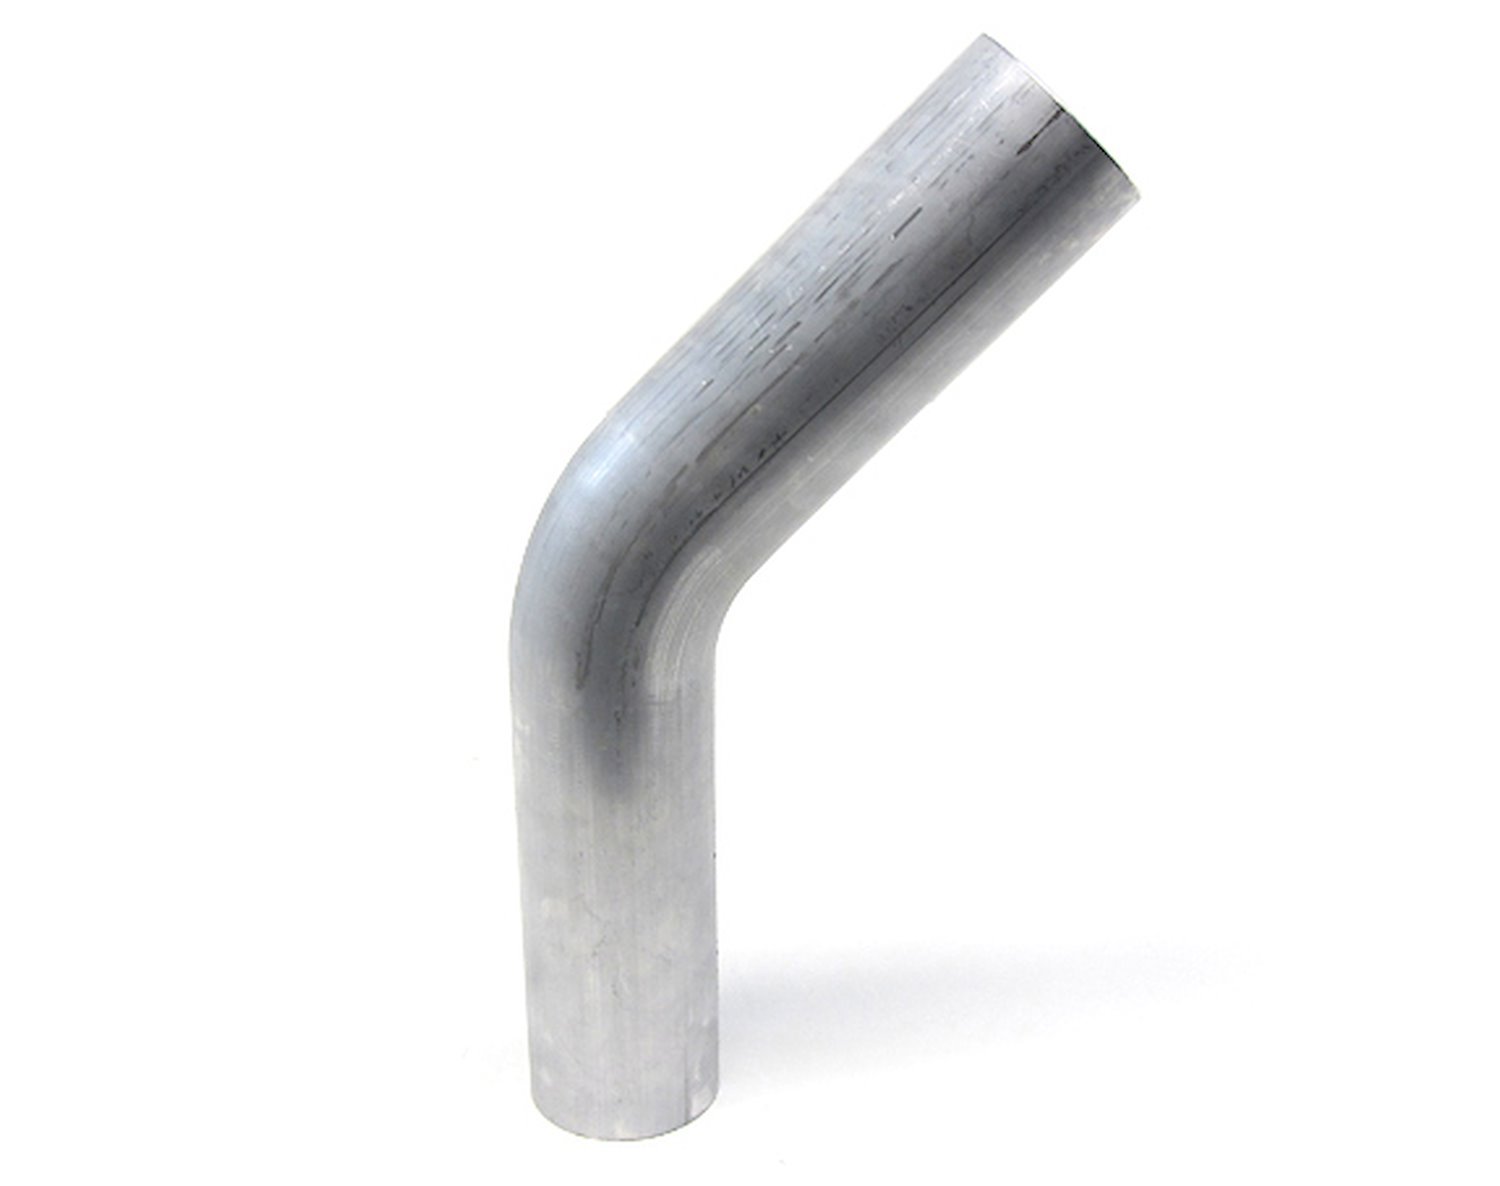 AT45-325-CLR-35 Aluminum Elbow Tube, 6061 Aluminum, 45-Degree Bend Elbow Tubing, 3-1/4 in. OD, Tight Radius, 3-1/2 in. CLR